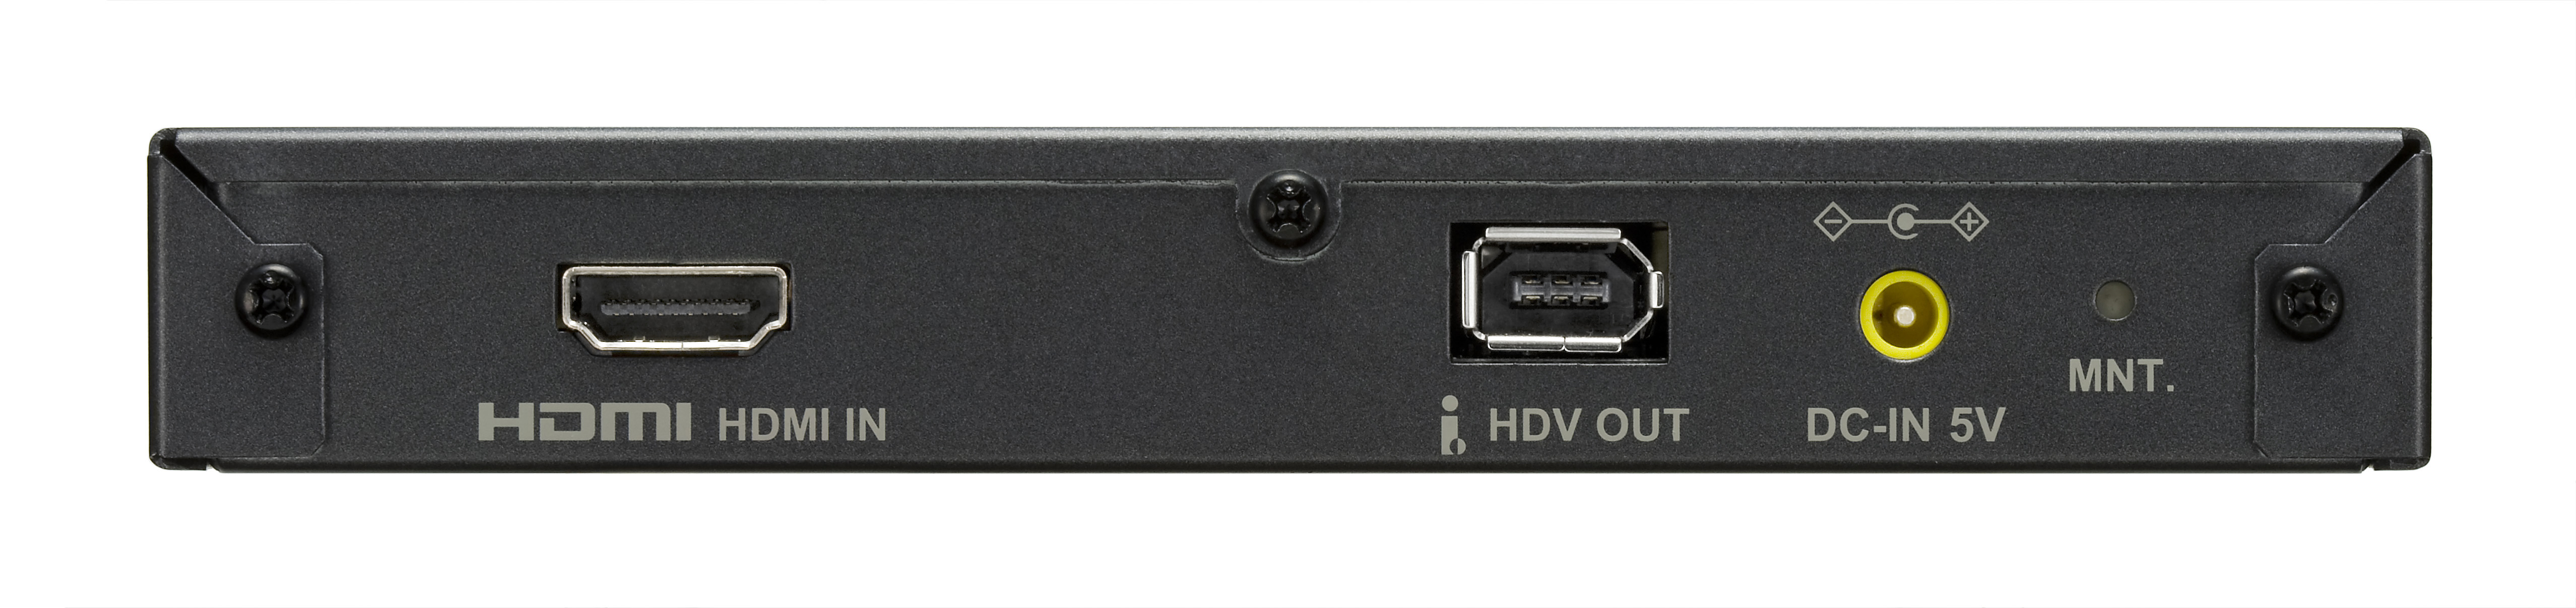 製品情報 - ADVC-HD50 の特長